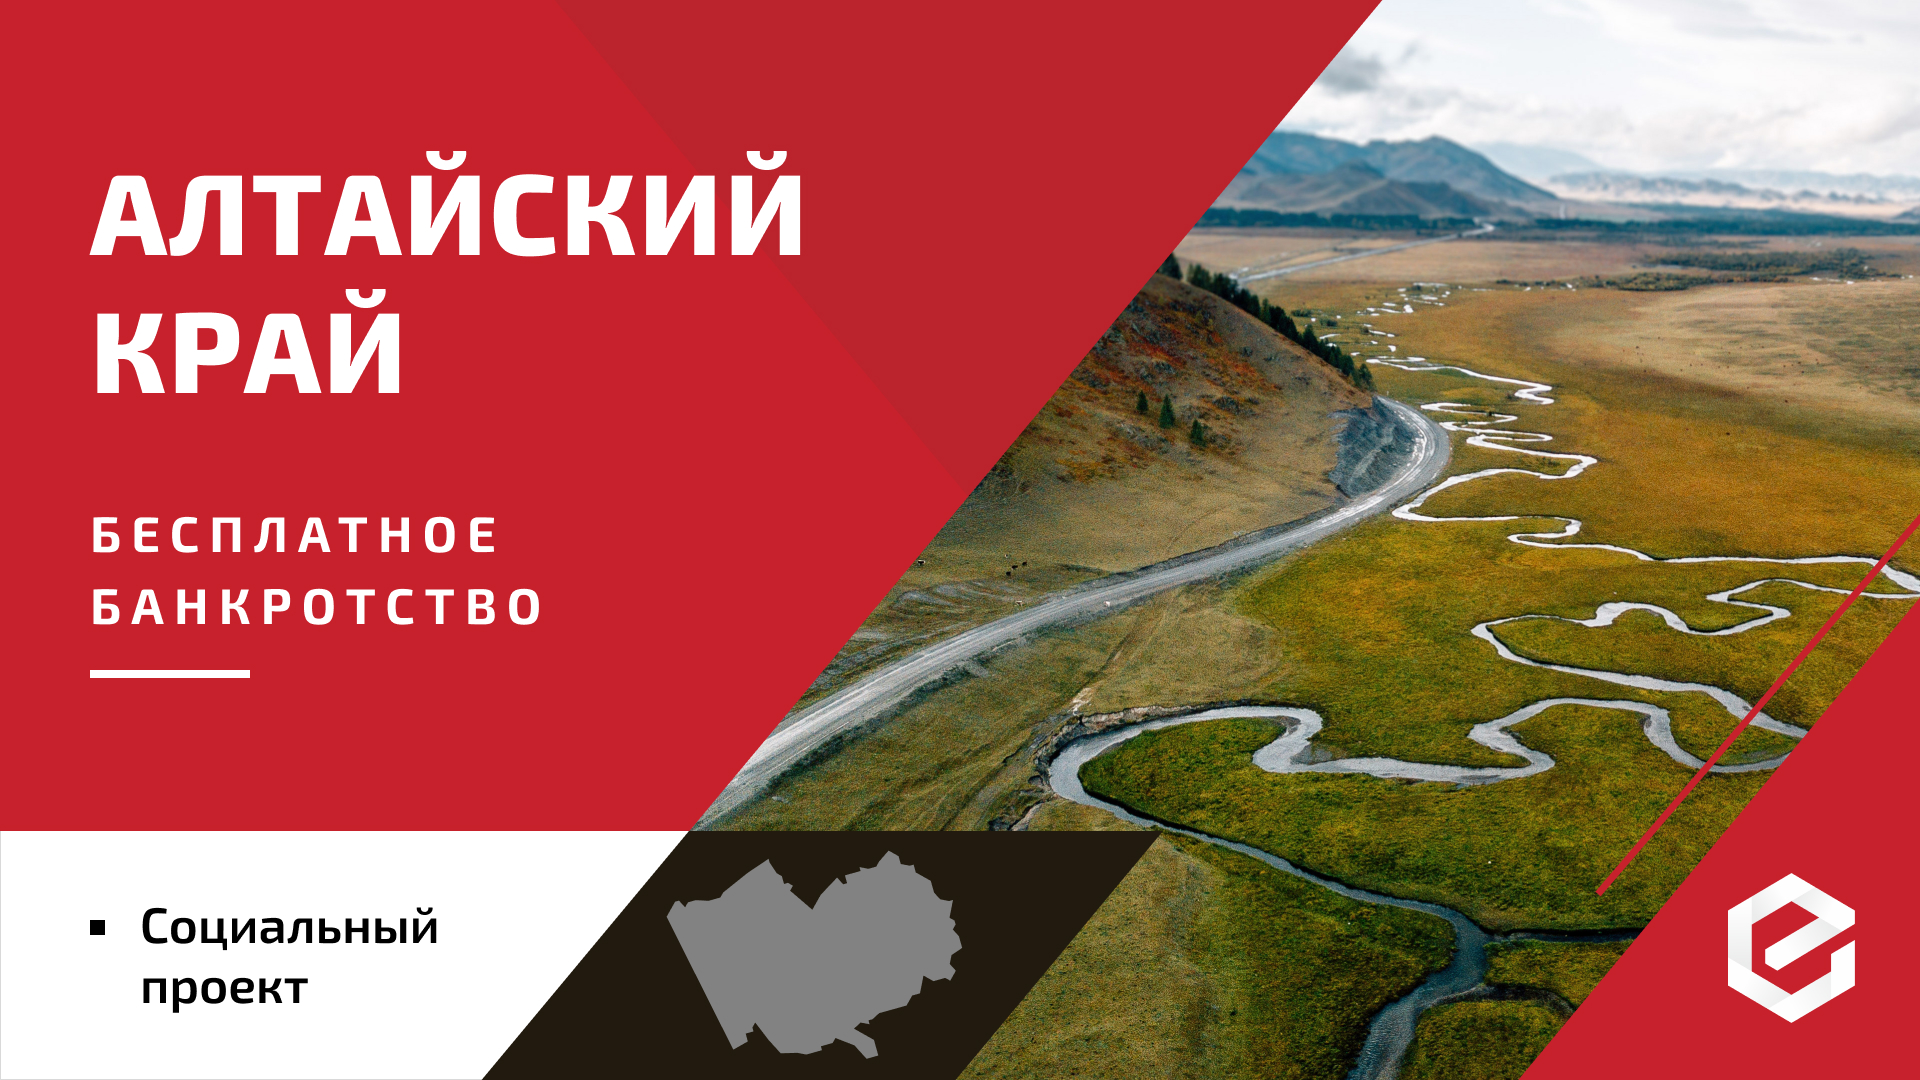 Для жителей Алтайского края «Единый Центр Защиты» предоставляет бесплатную квоту на списание долгов